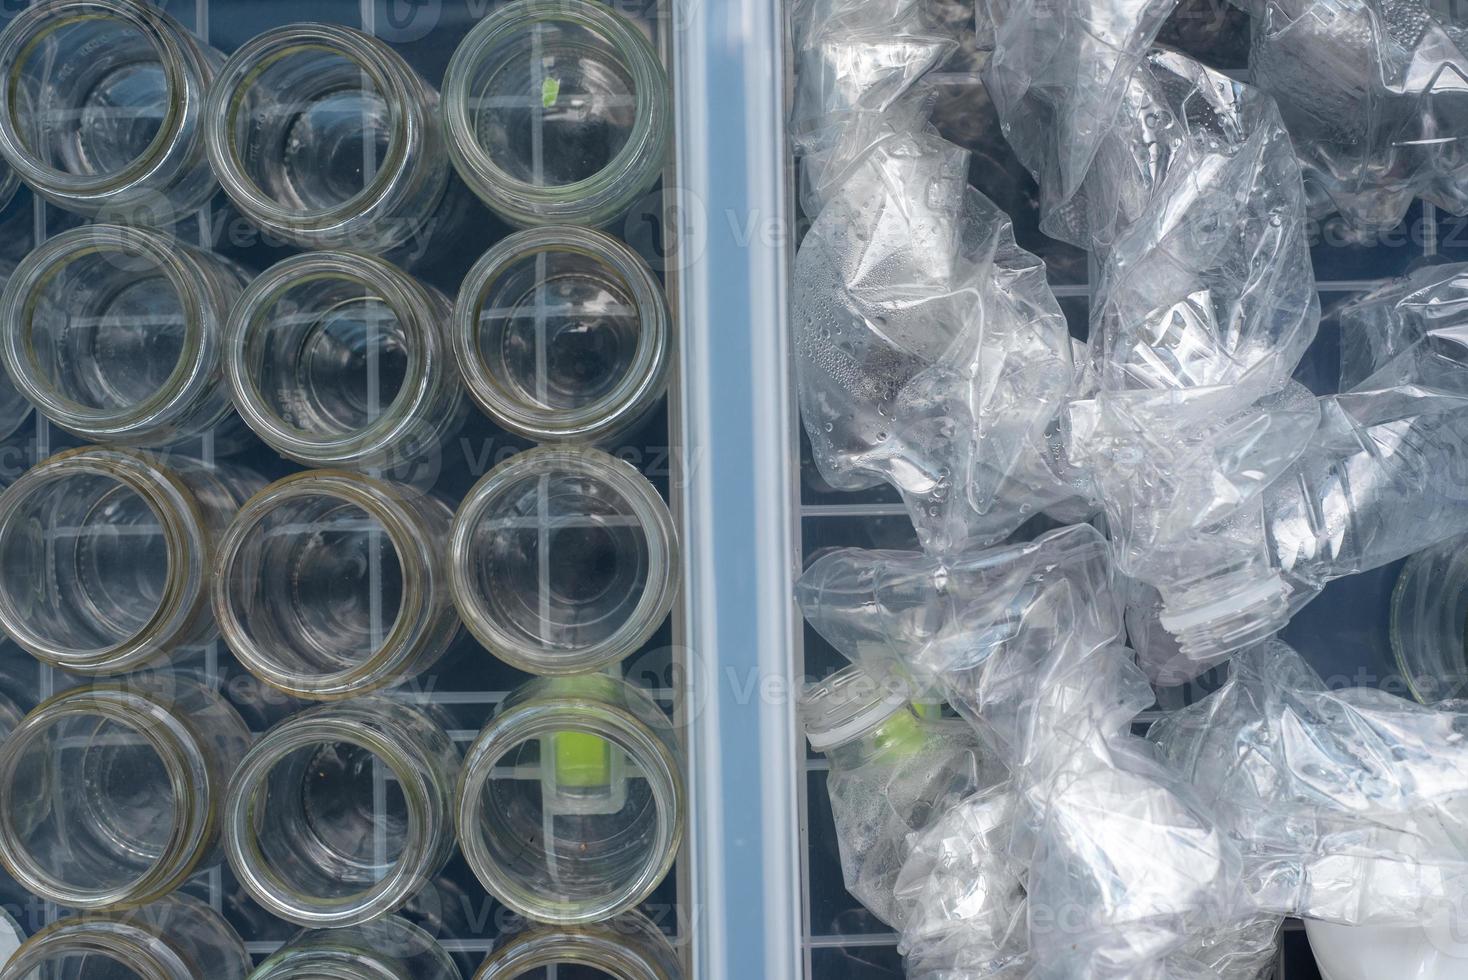 clasificación de envases de vidrio y botellas de plástico para su reciclaje y reutilización. foto